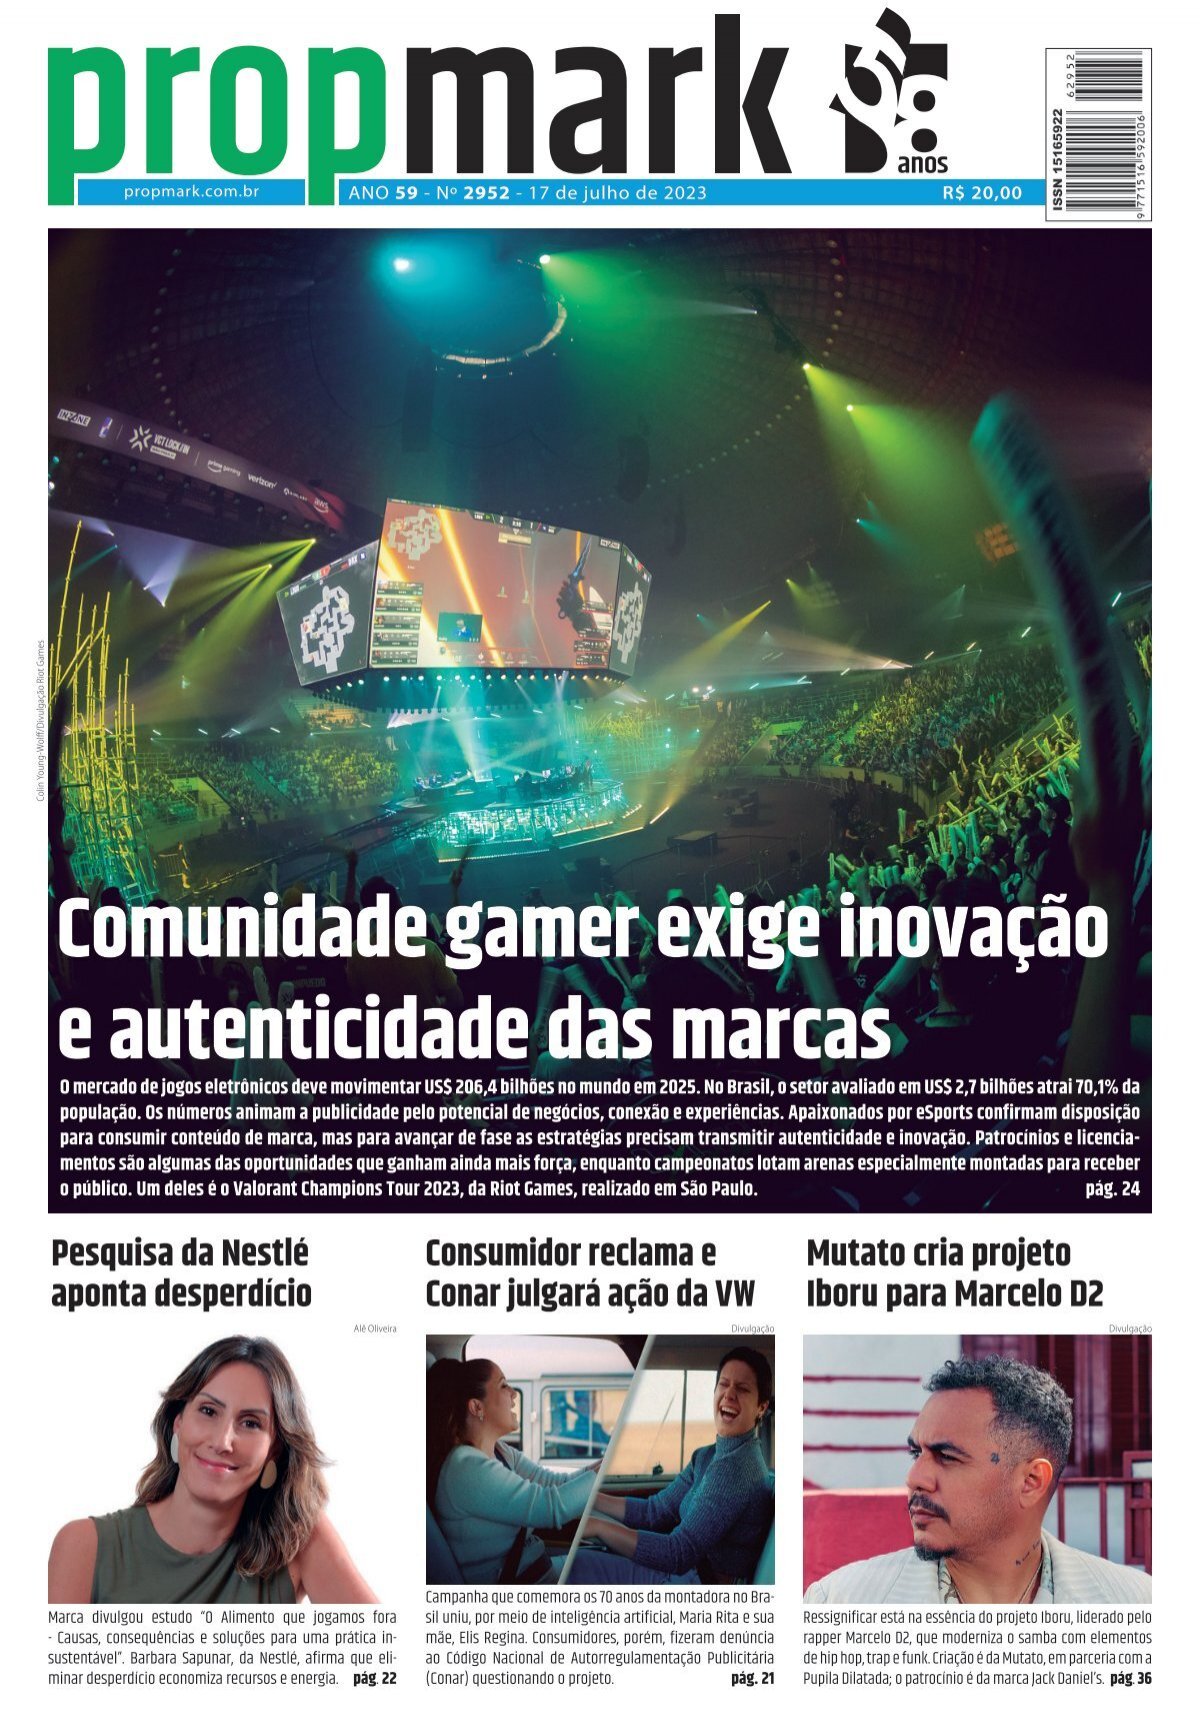 Campeonato Brasileiro de League of Legends supera nicho e engaja anunciantes